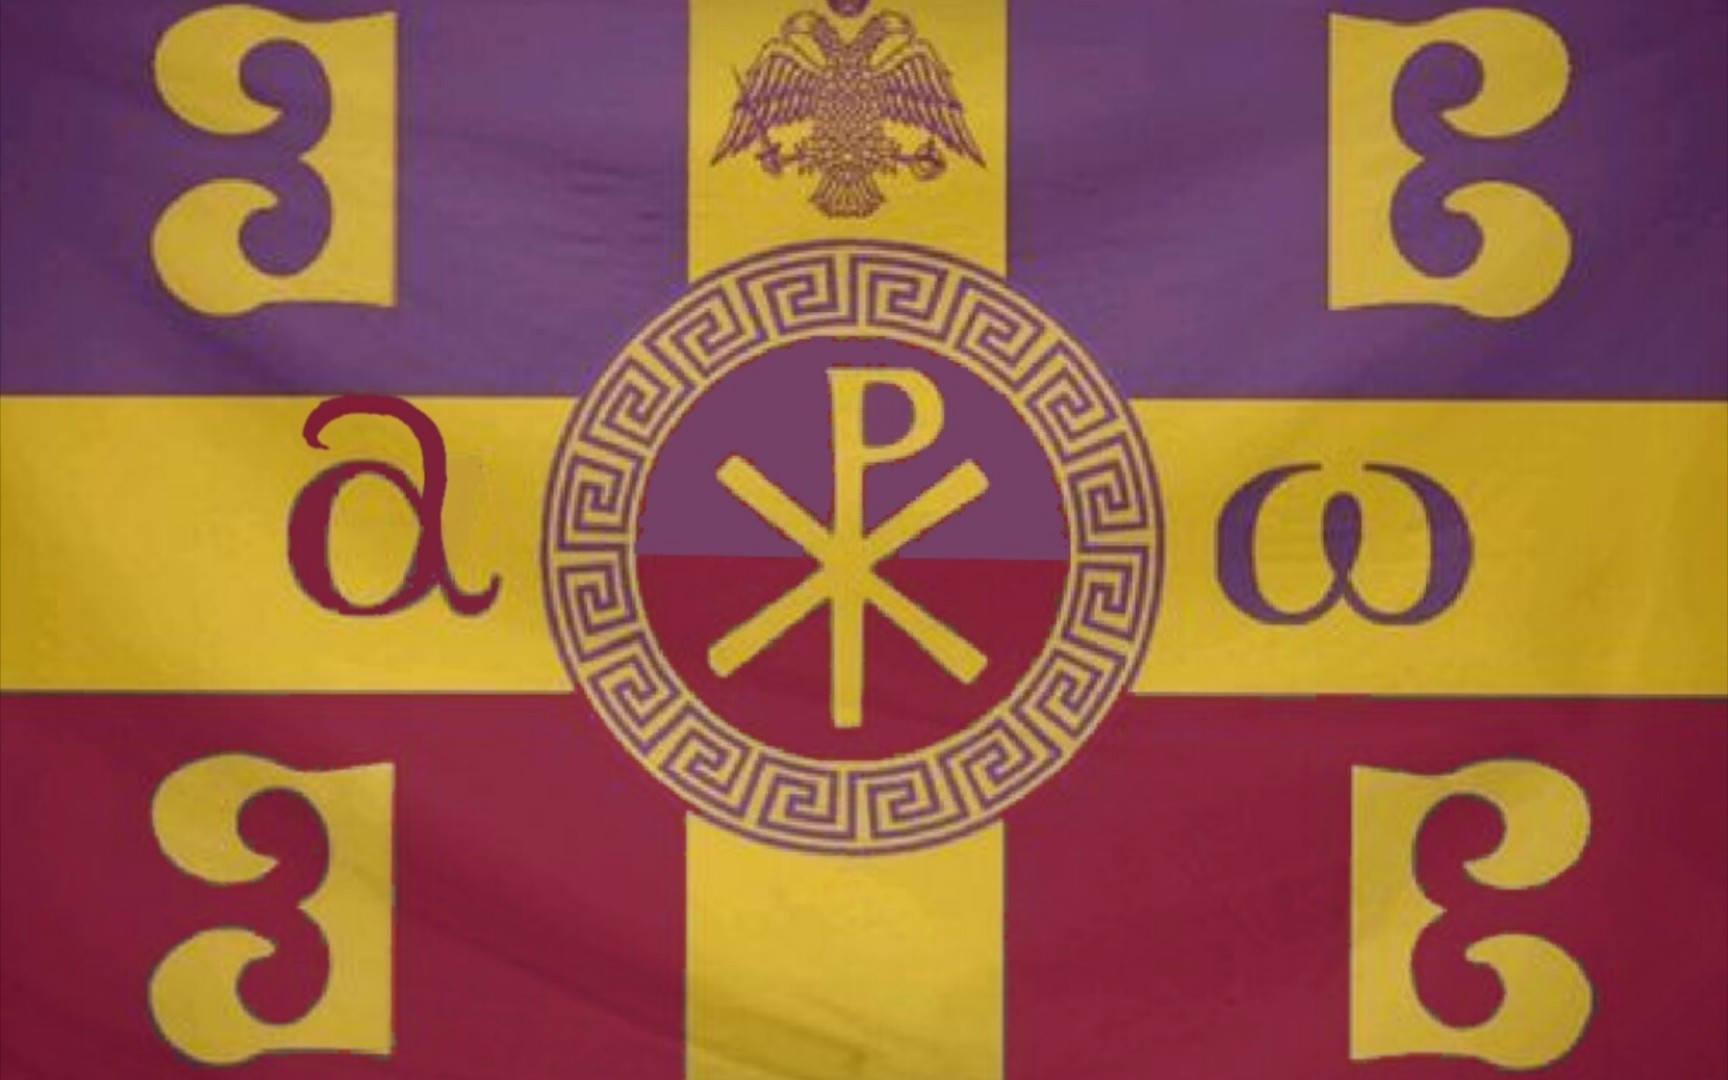 罗马帝国旗帜图案图片